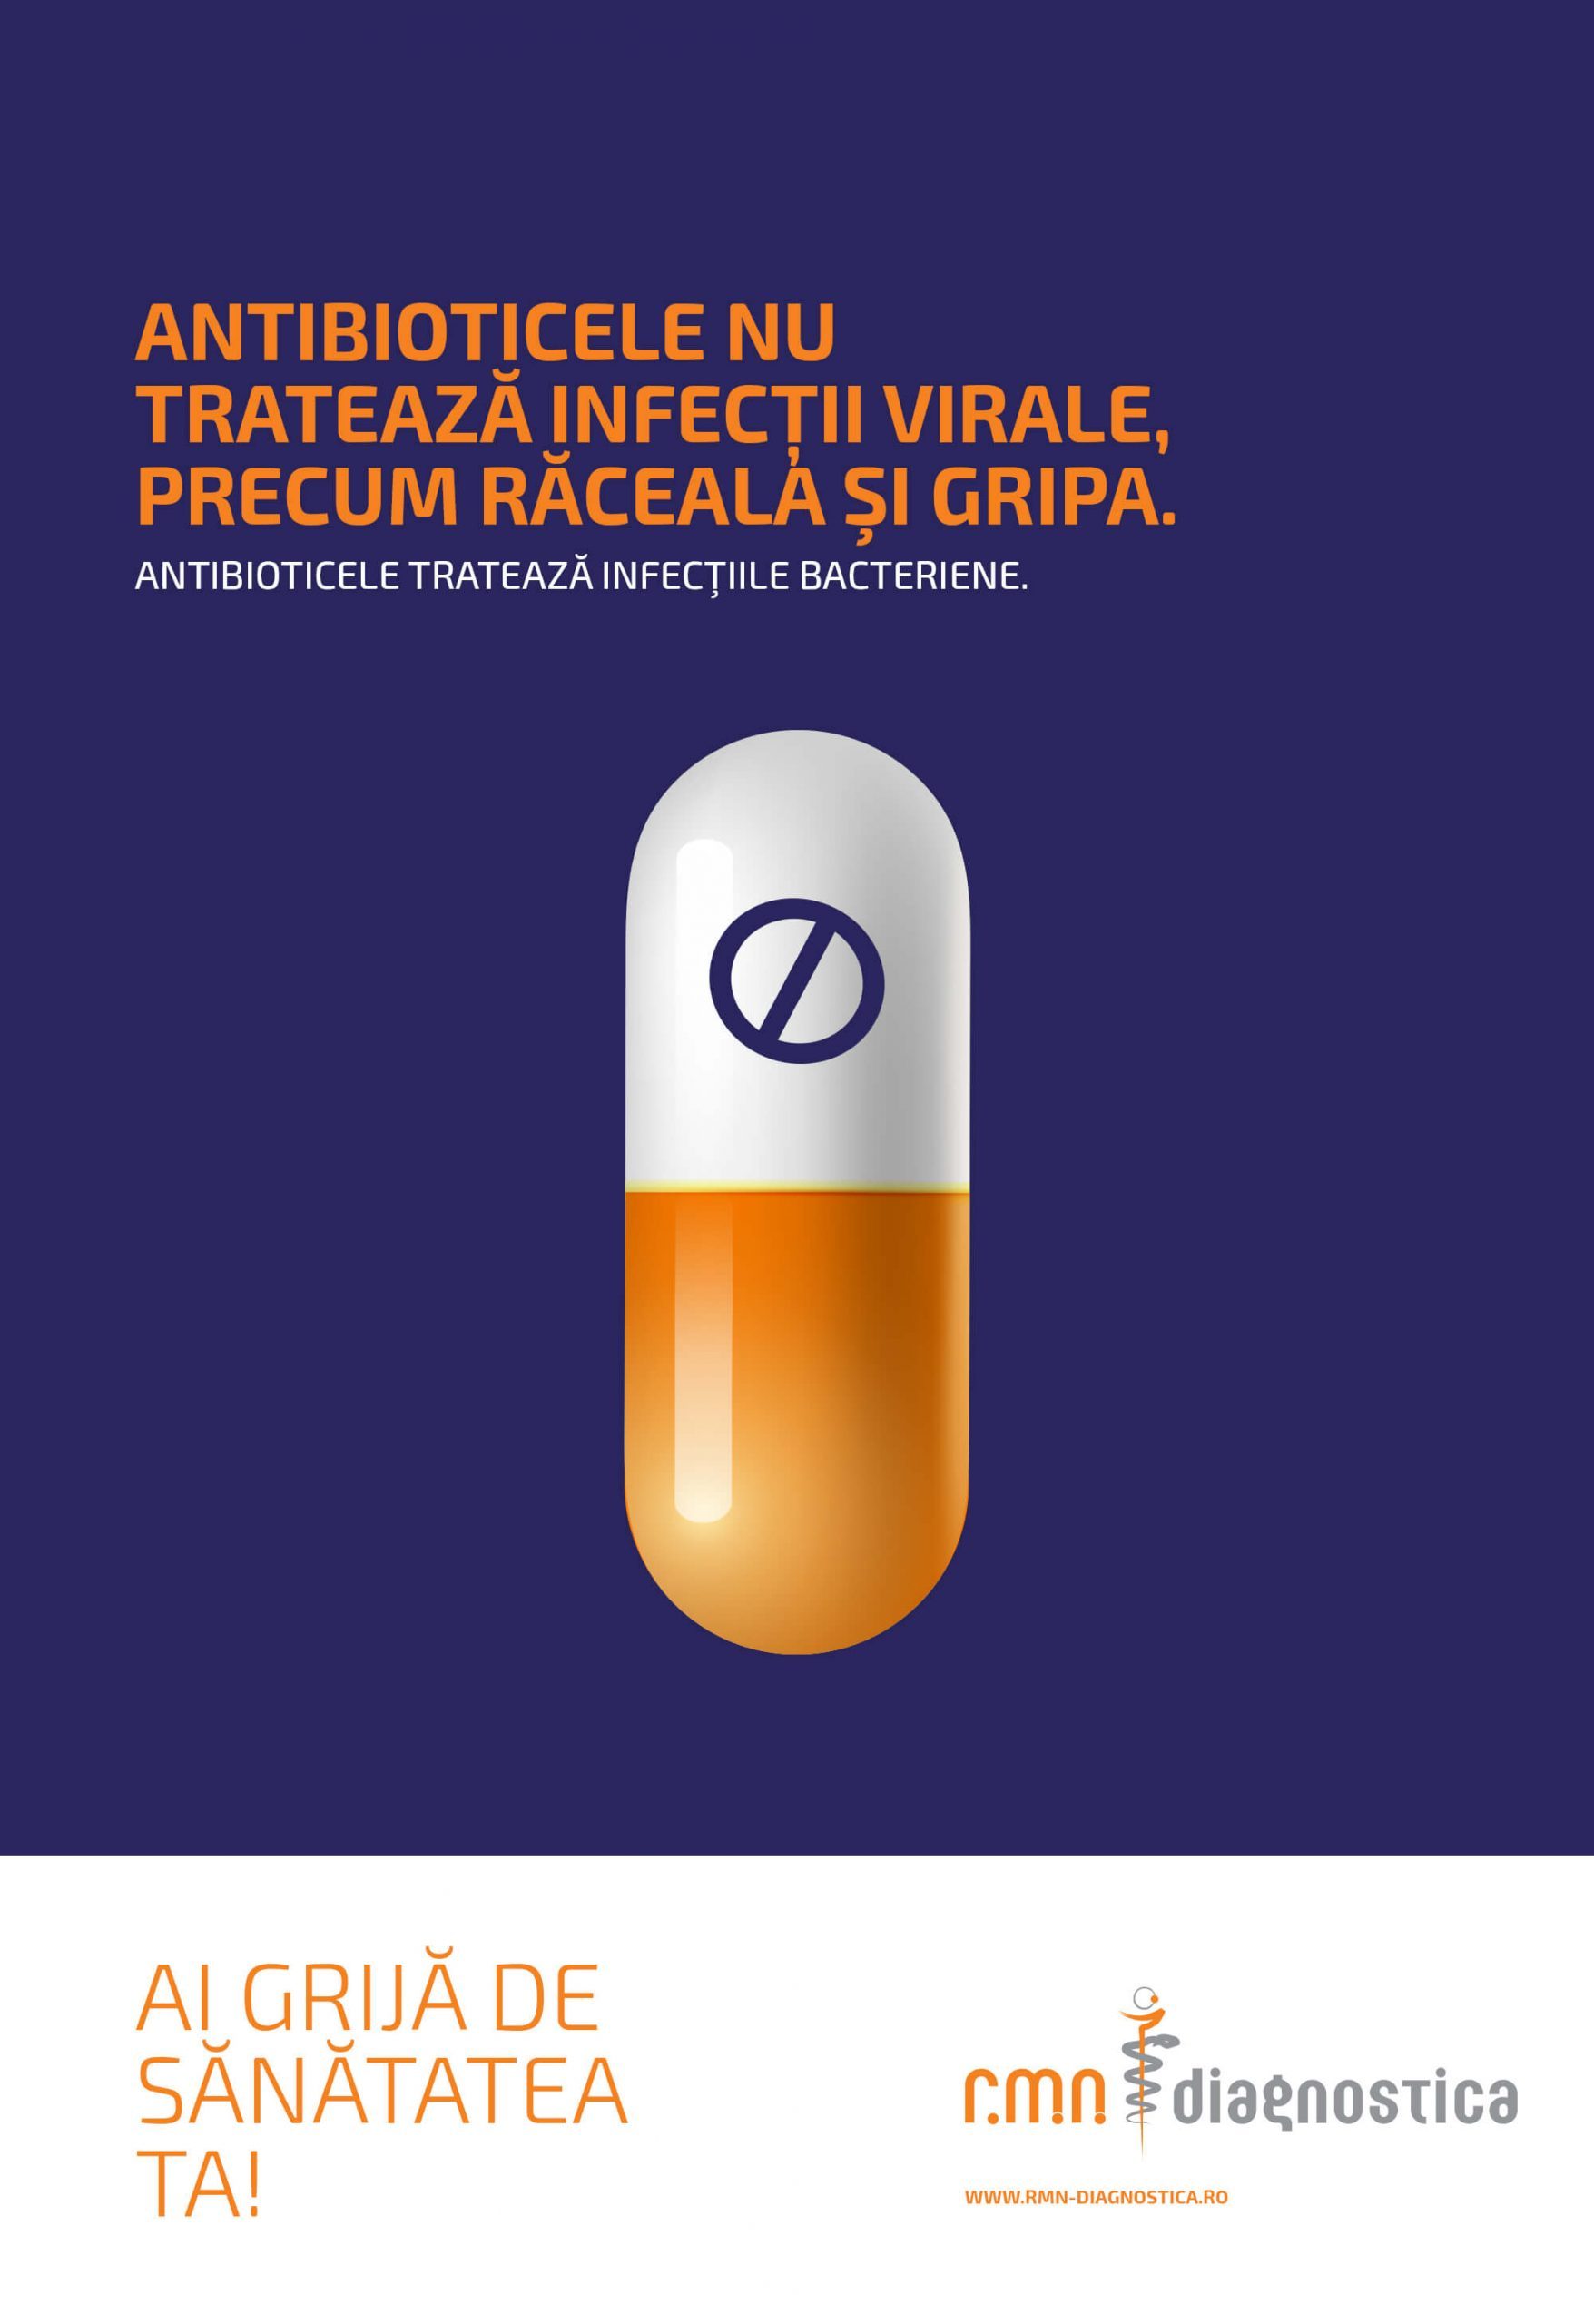 Antibioticele nu tratează infecțiile virale, cum ar fi răceala sau gripa!